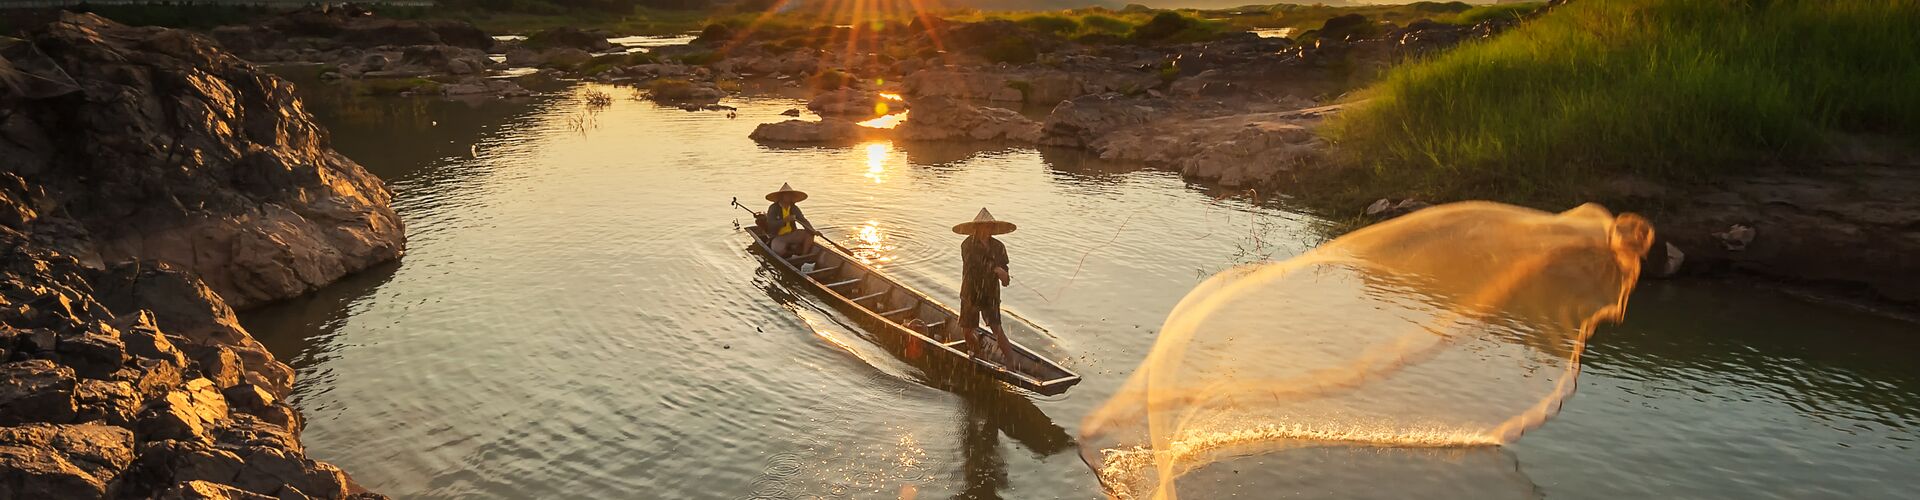 Mekong Delta at sunset, Vietnam